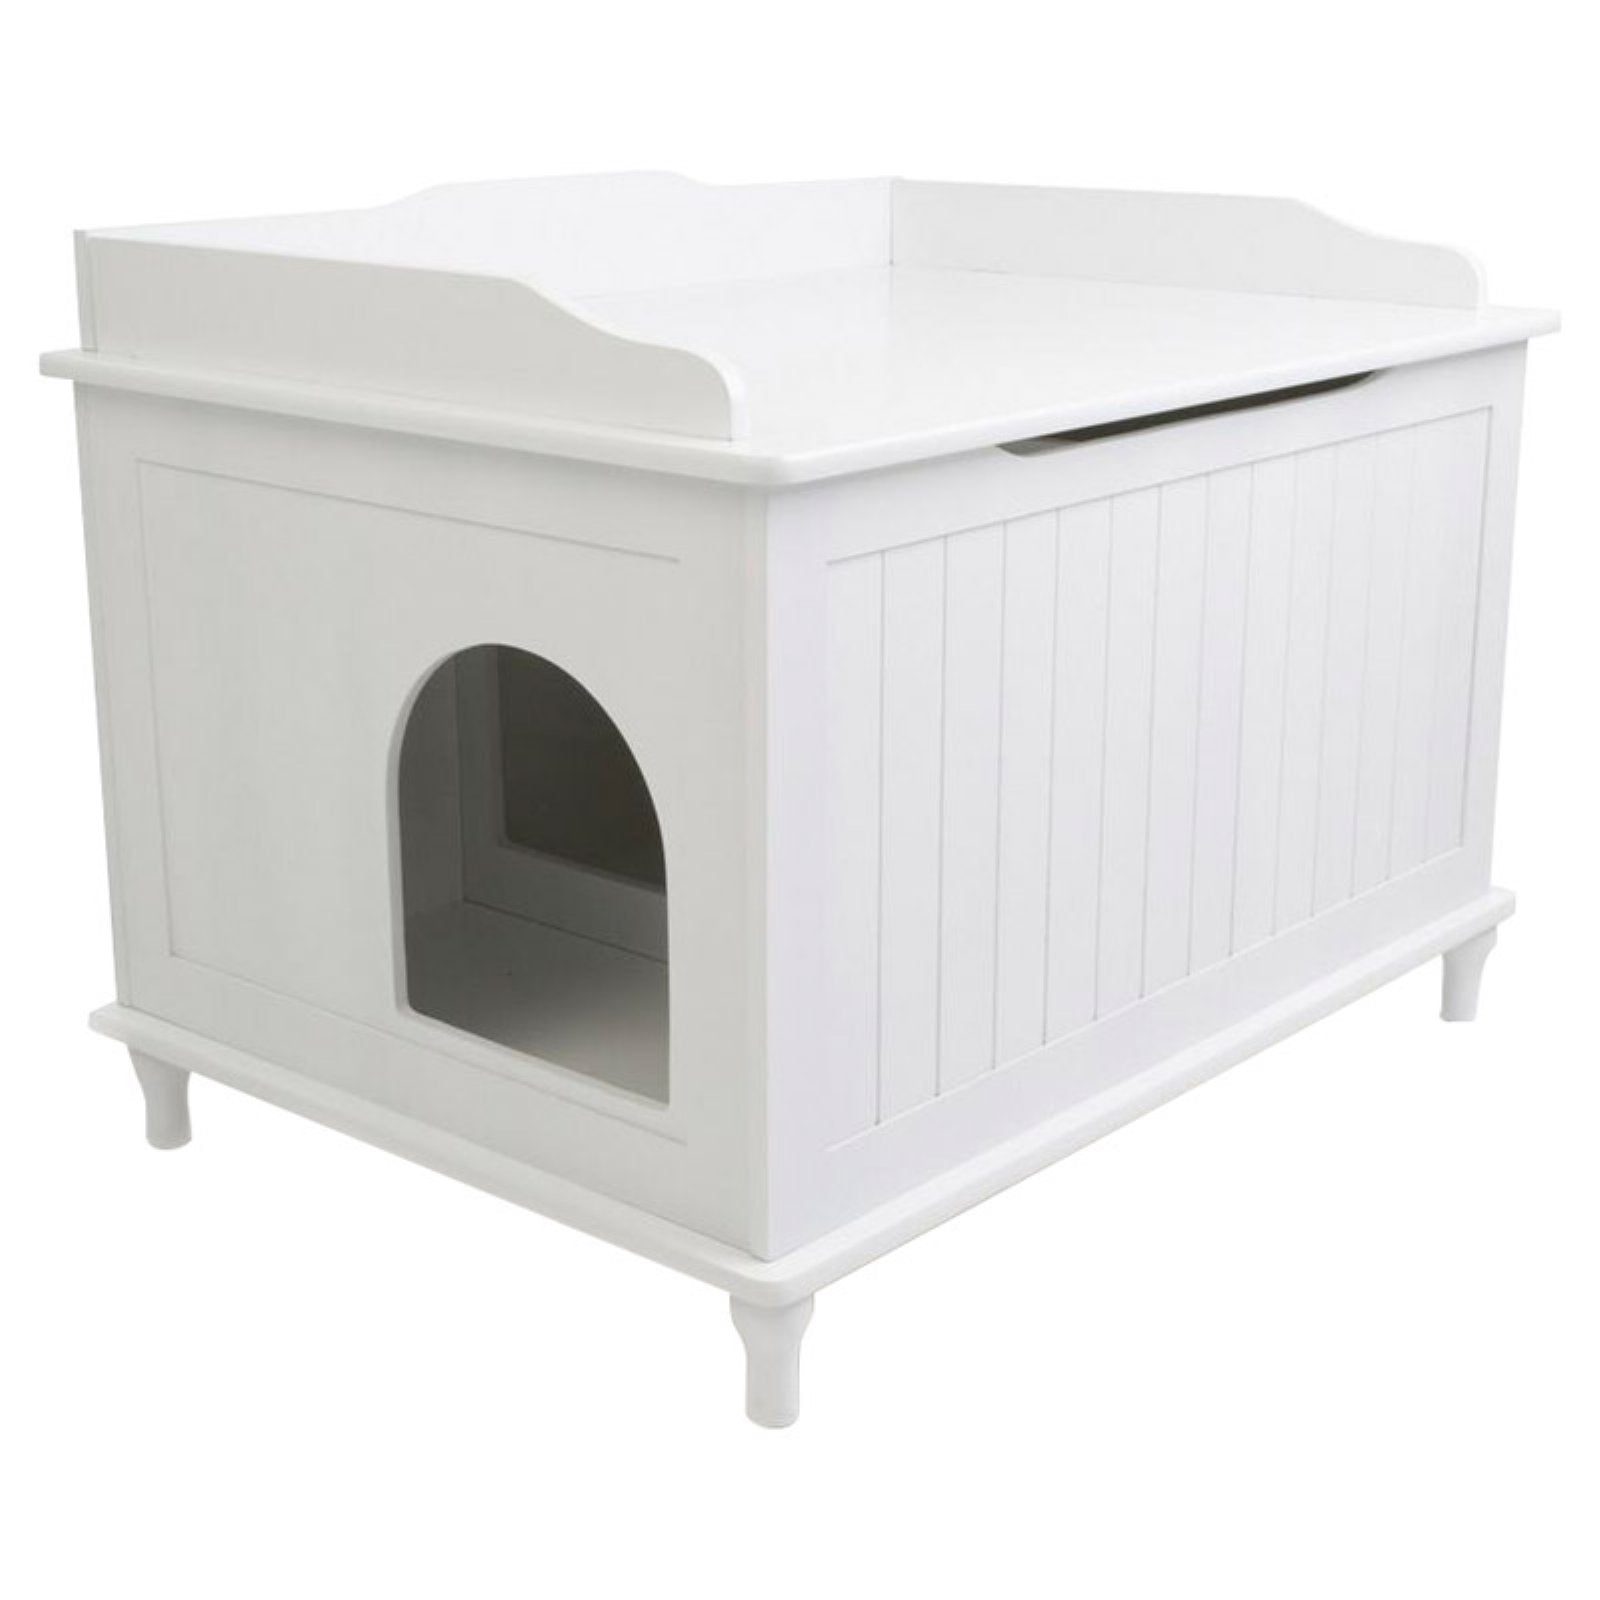 Designer Catbox Litter Box Enclosure Animals & Pet Supplies > Pet Supplies > Cat Supplies > Cat Furniture Designer Catbox LLC   